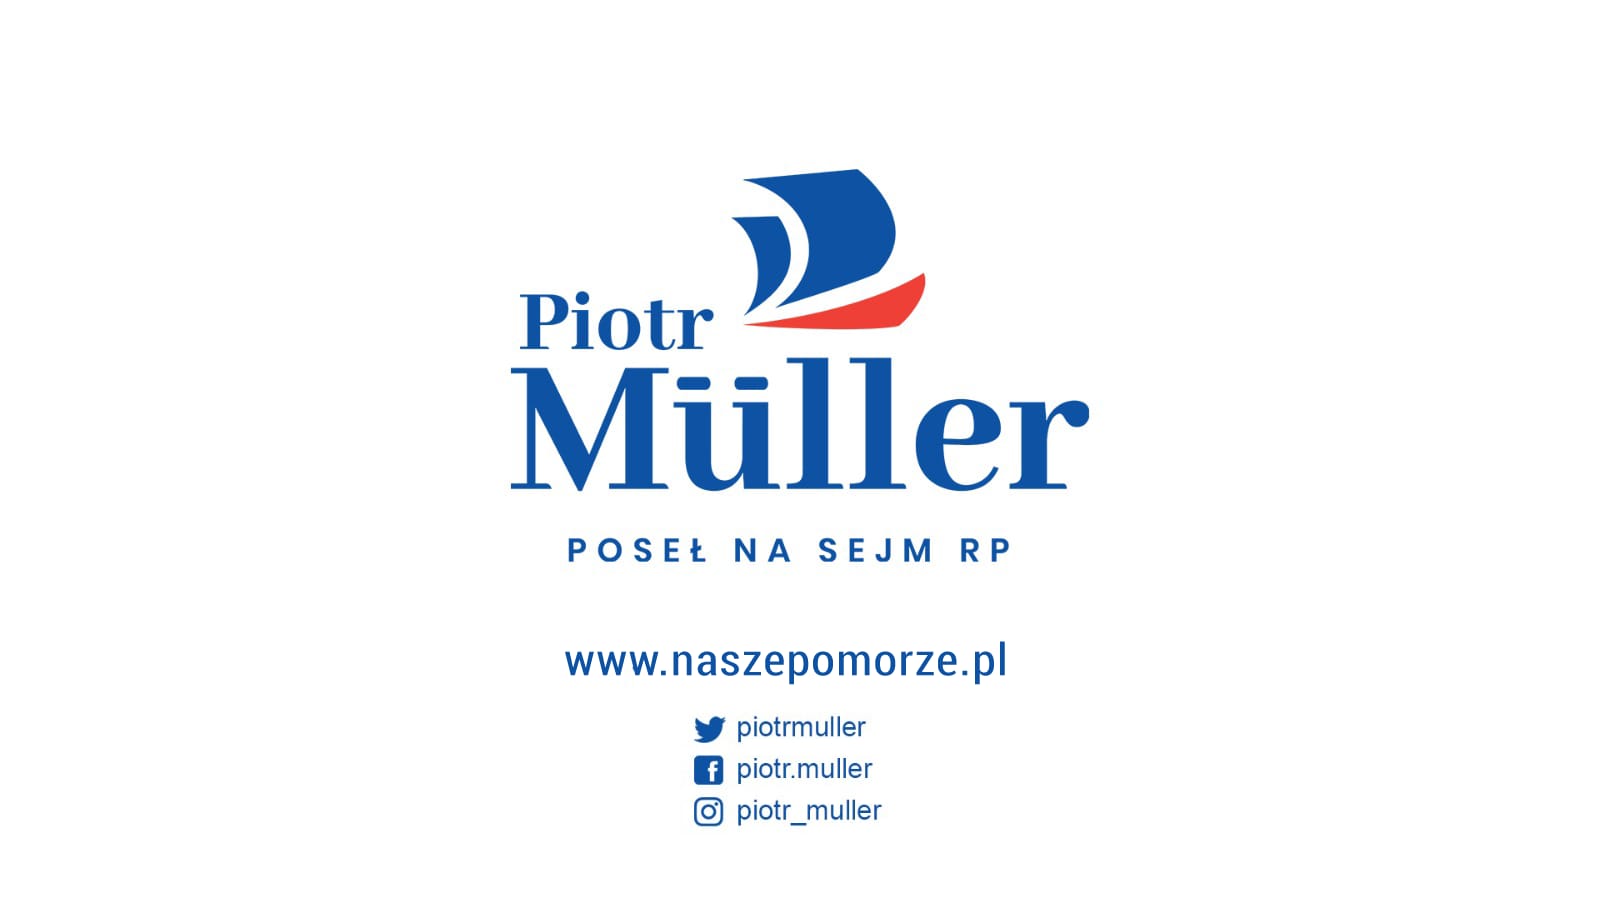 Znajdą w nim Państwo podsumowanie dwóch lat działalności poselskiej Piotra Müllera na rzecz naszego regionu.